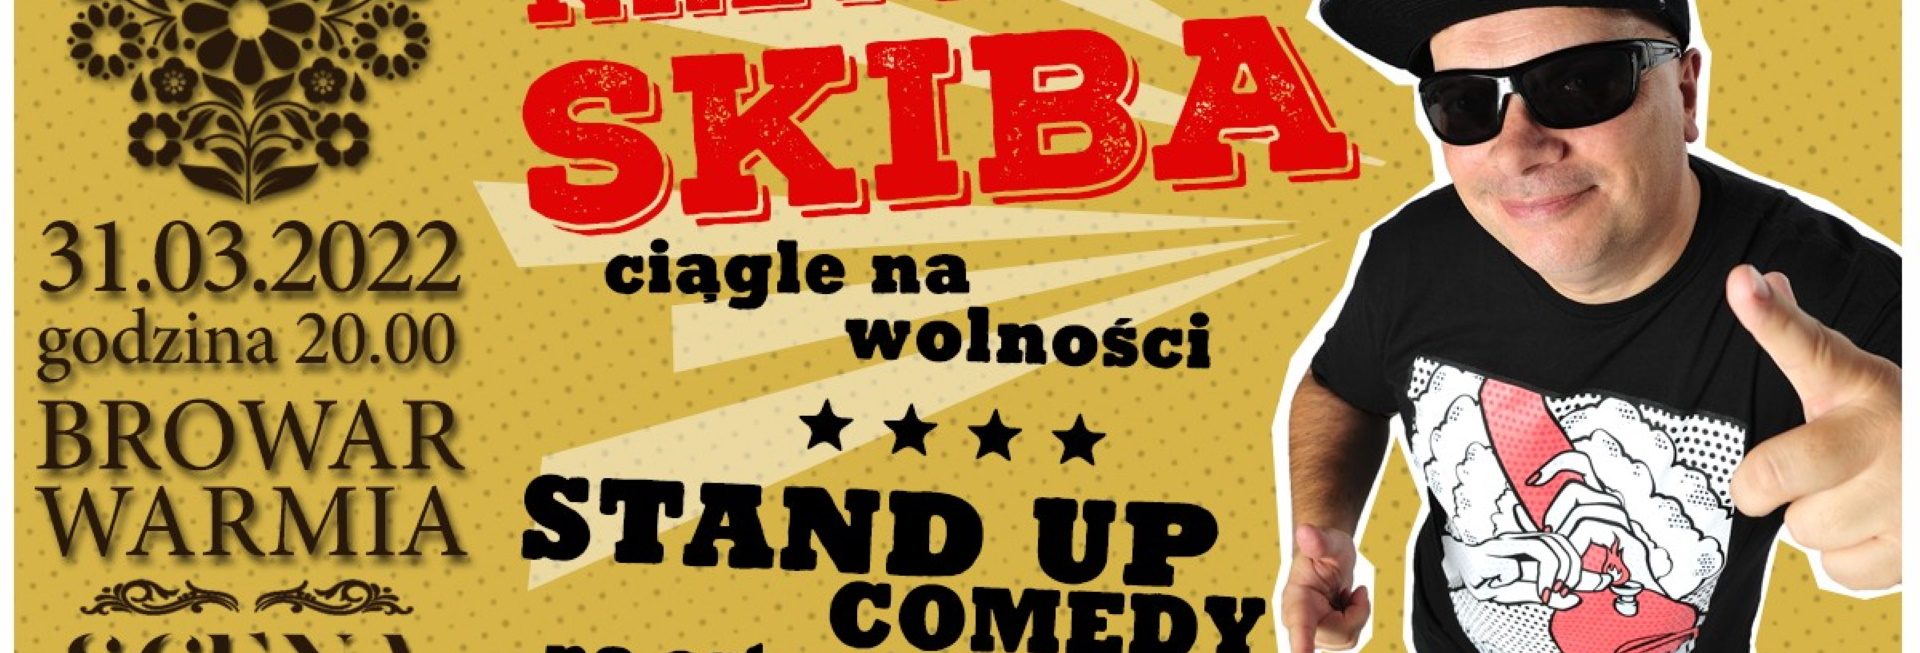 Plakat graficzny zapraszający do Olsztyna na stand-up Krzysztof Skiba "Ciągle na wolności" Olsztyn 2022.